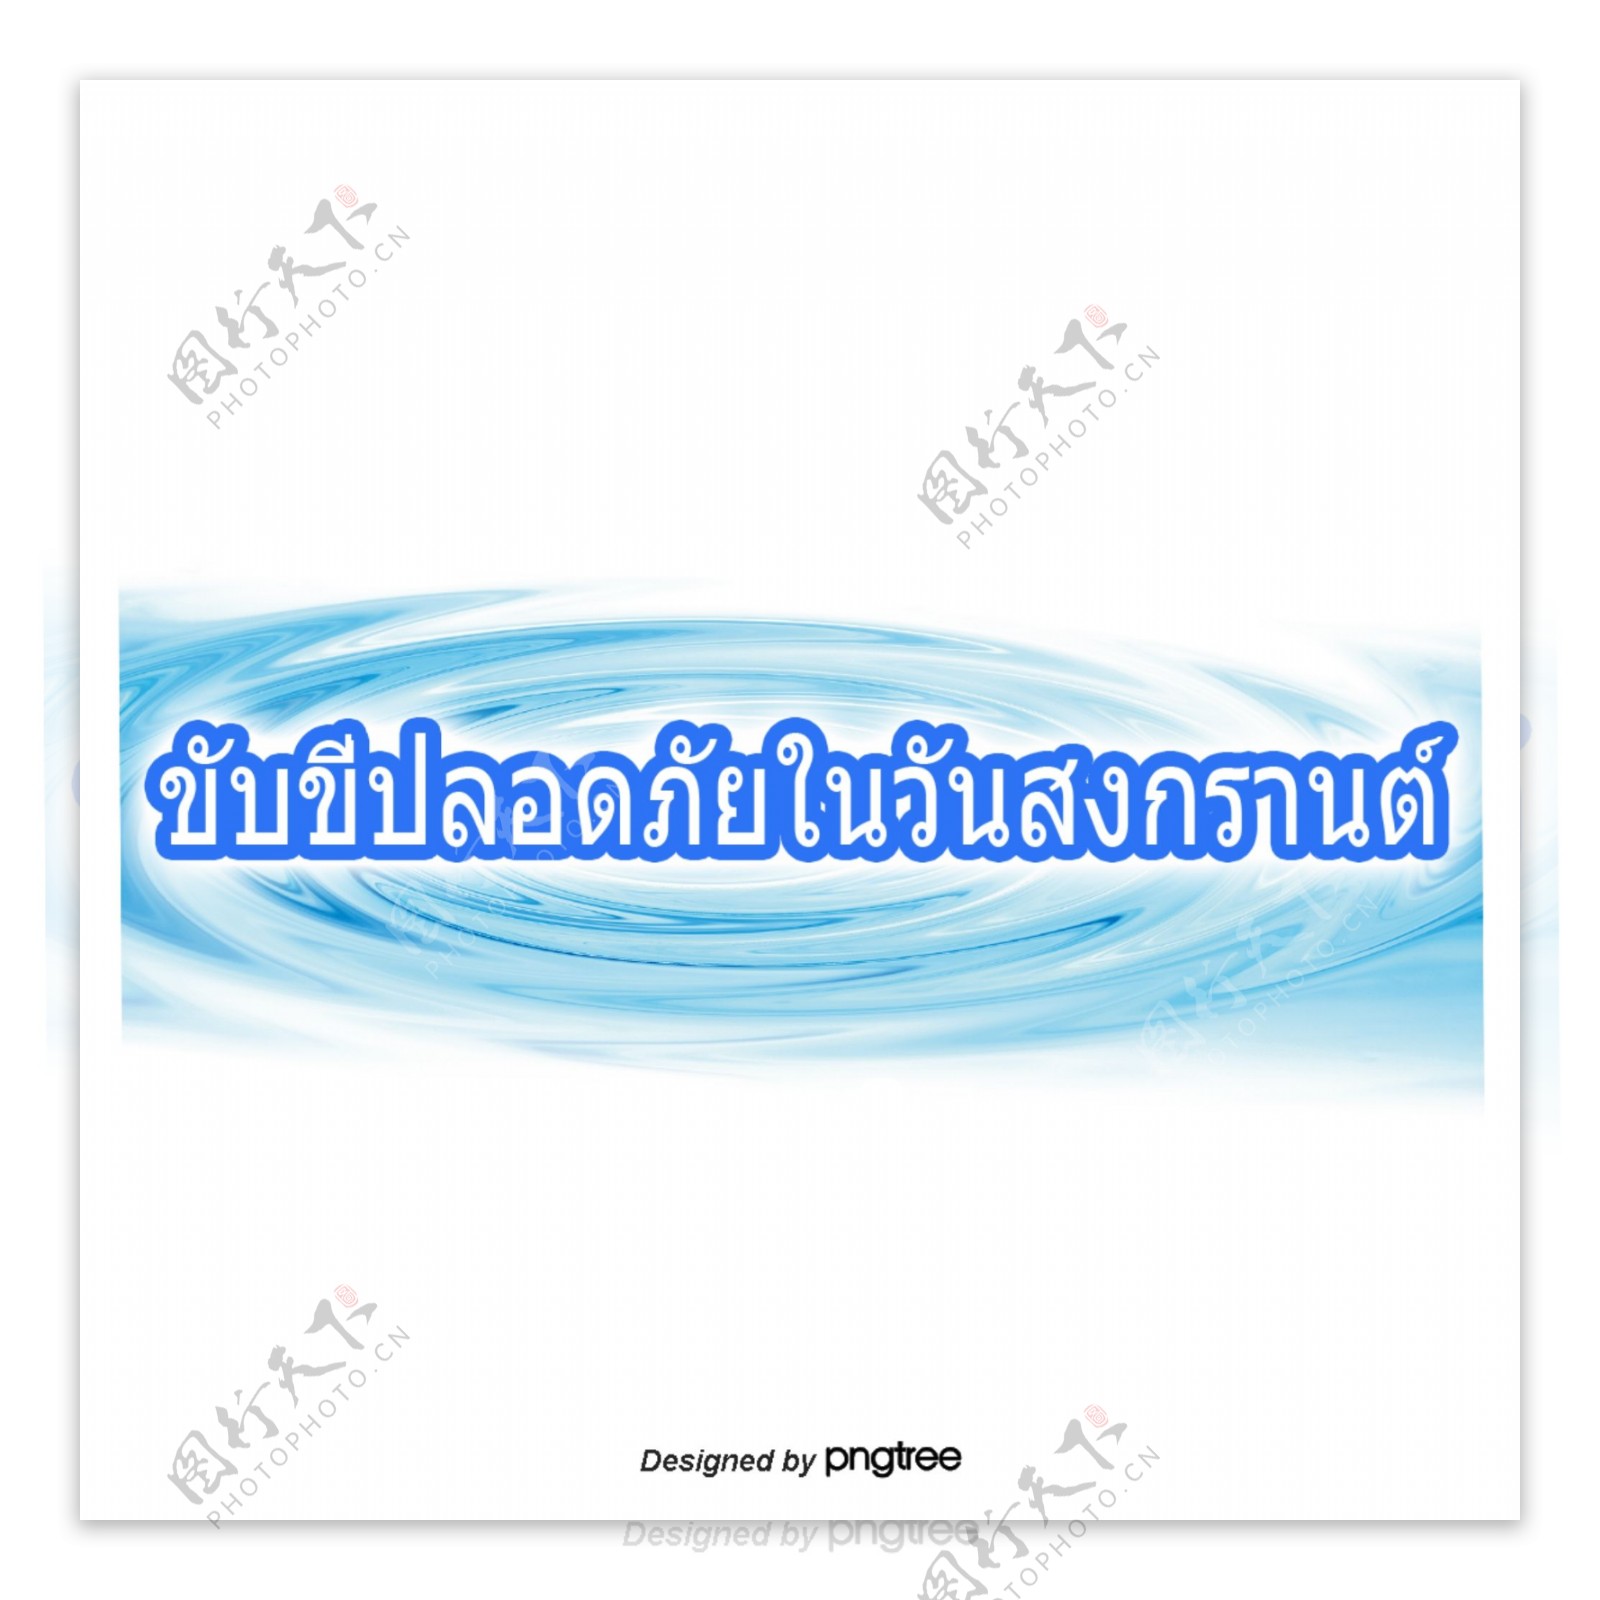 泰国泼水节的文字字体深蓝色的安全驾驶